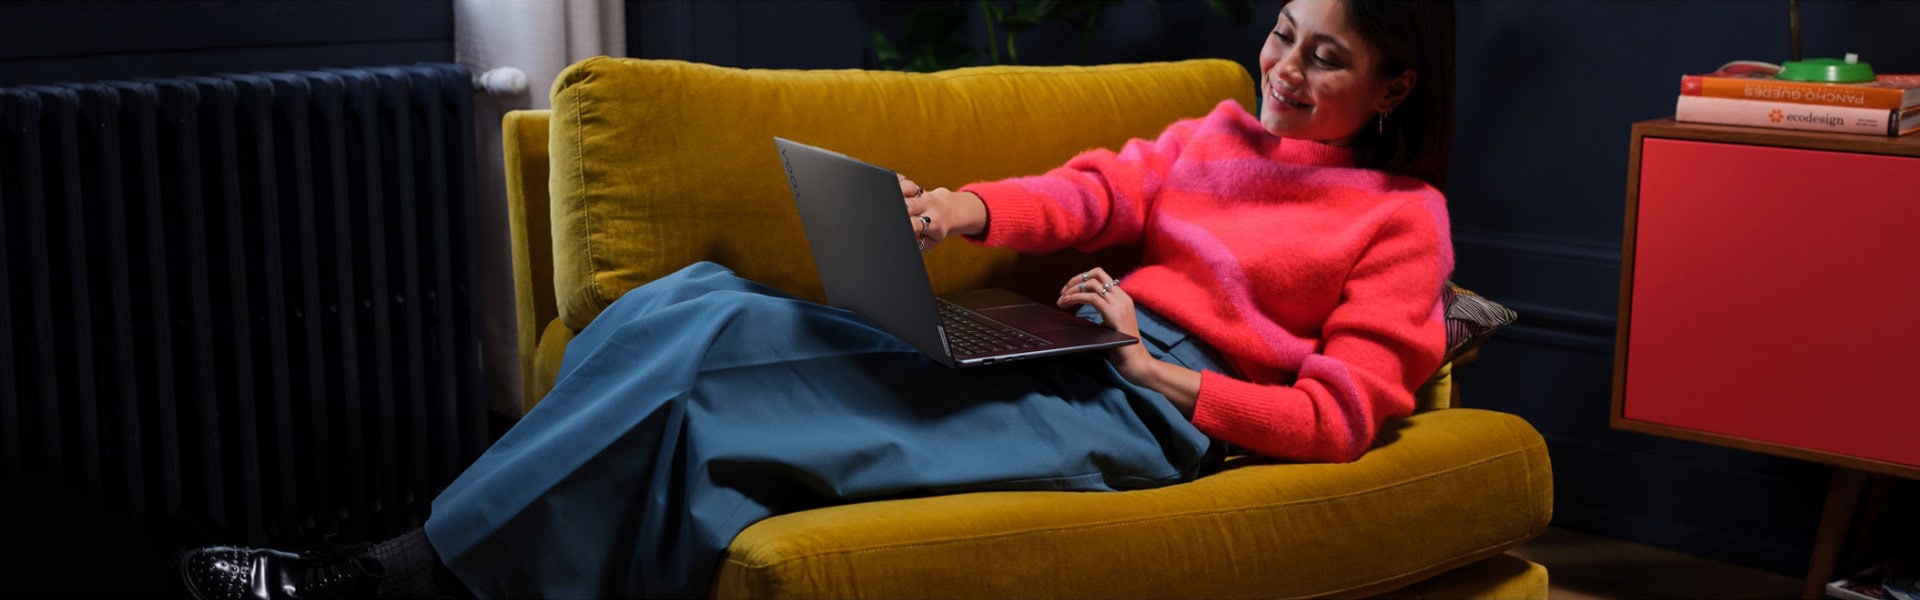 Žena sedící na velké židli s notebookem Lenovo Yoga na klíně